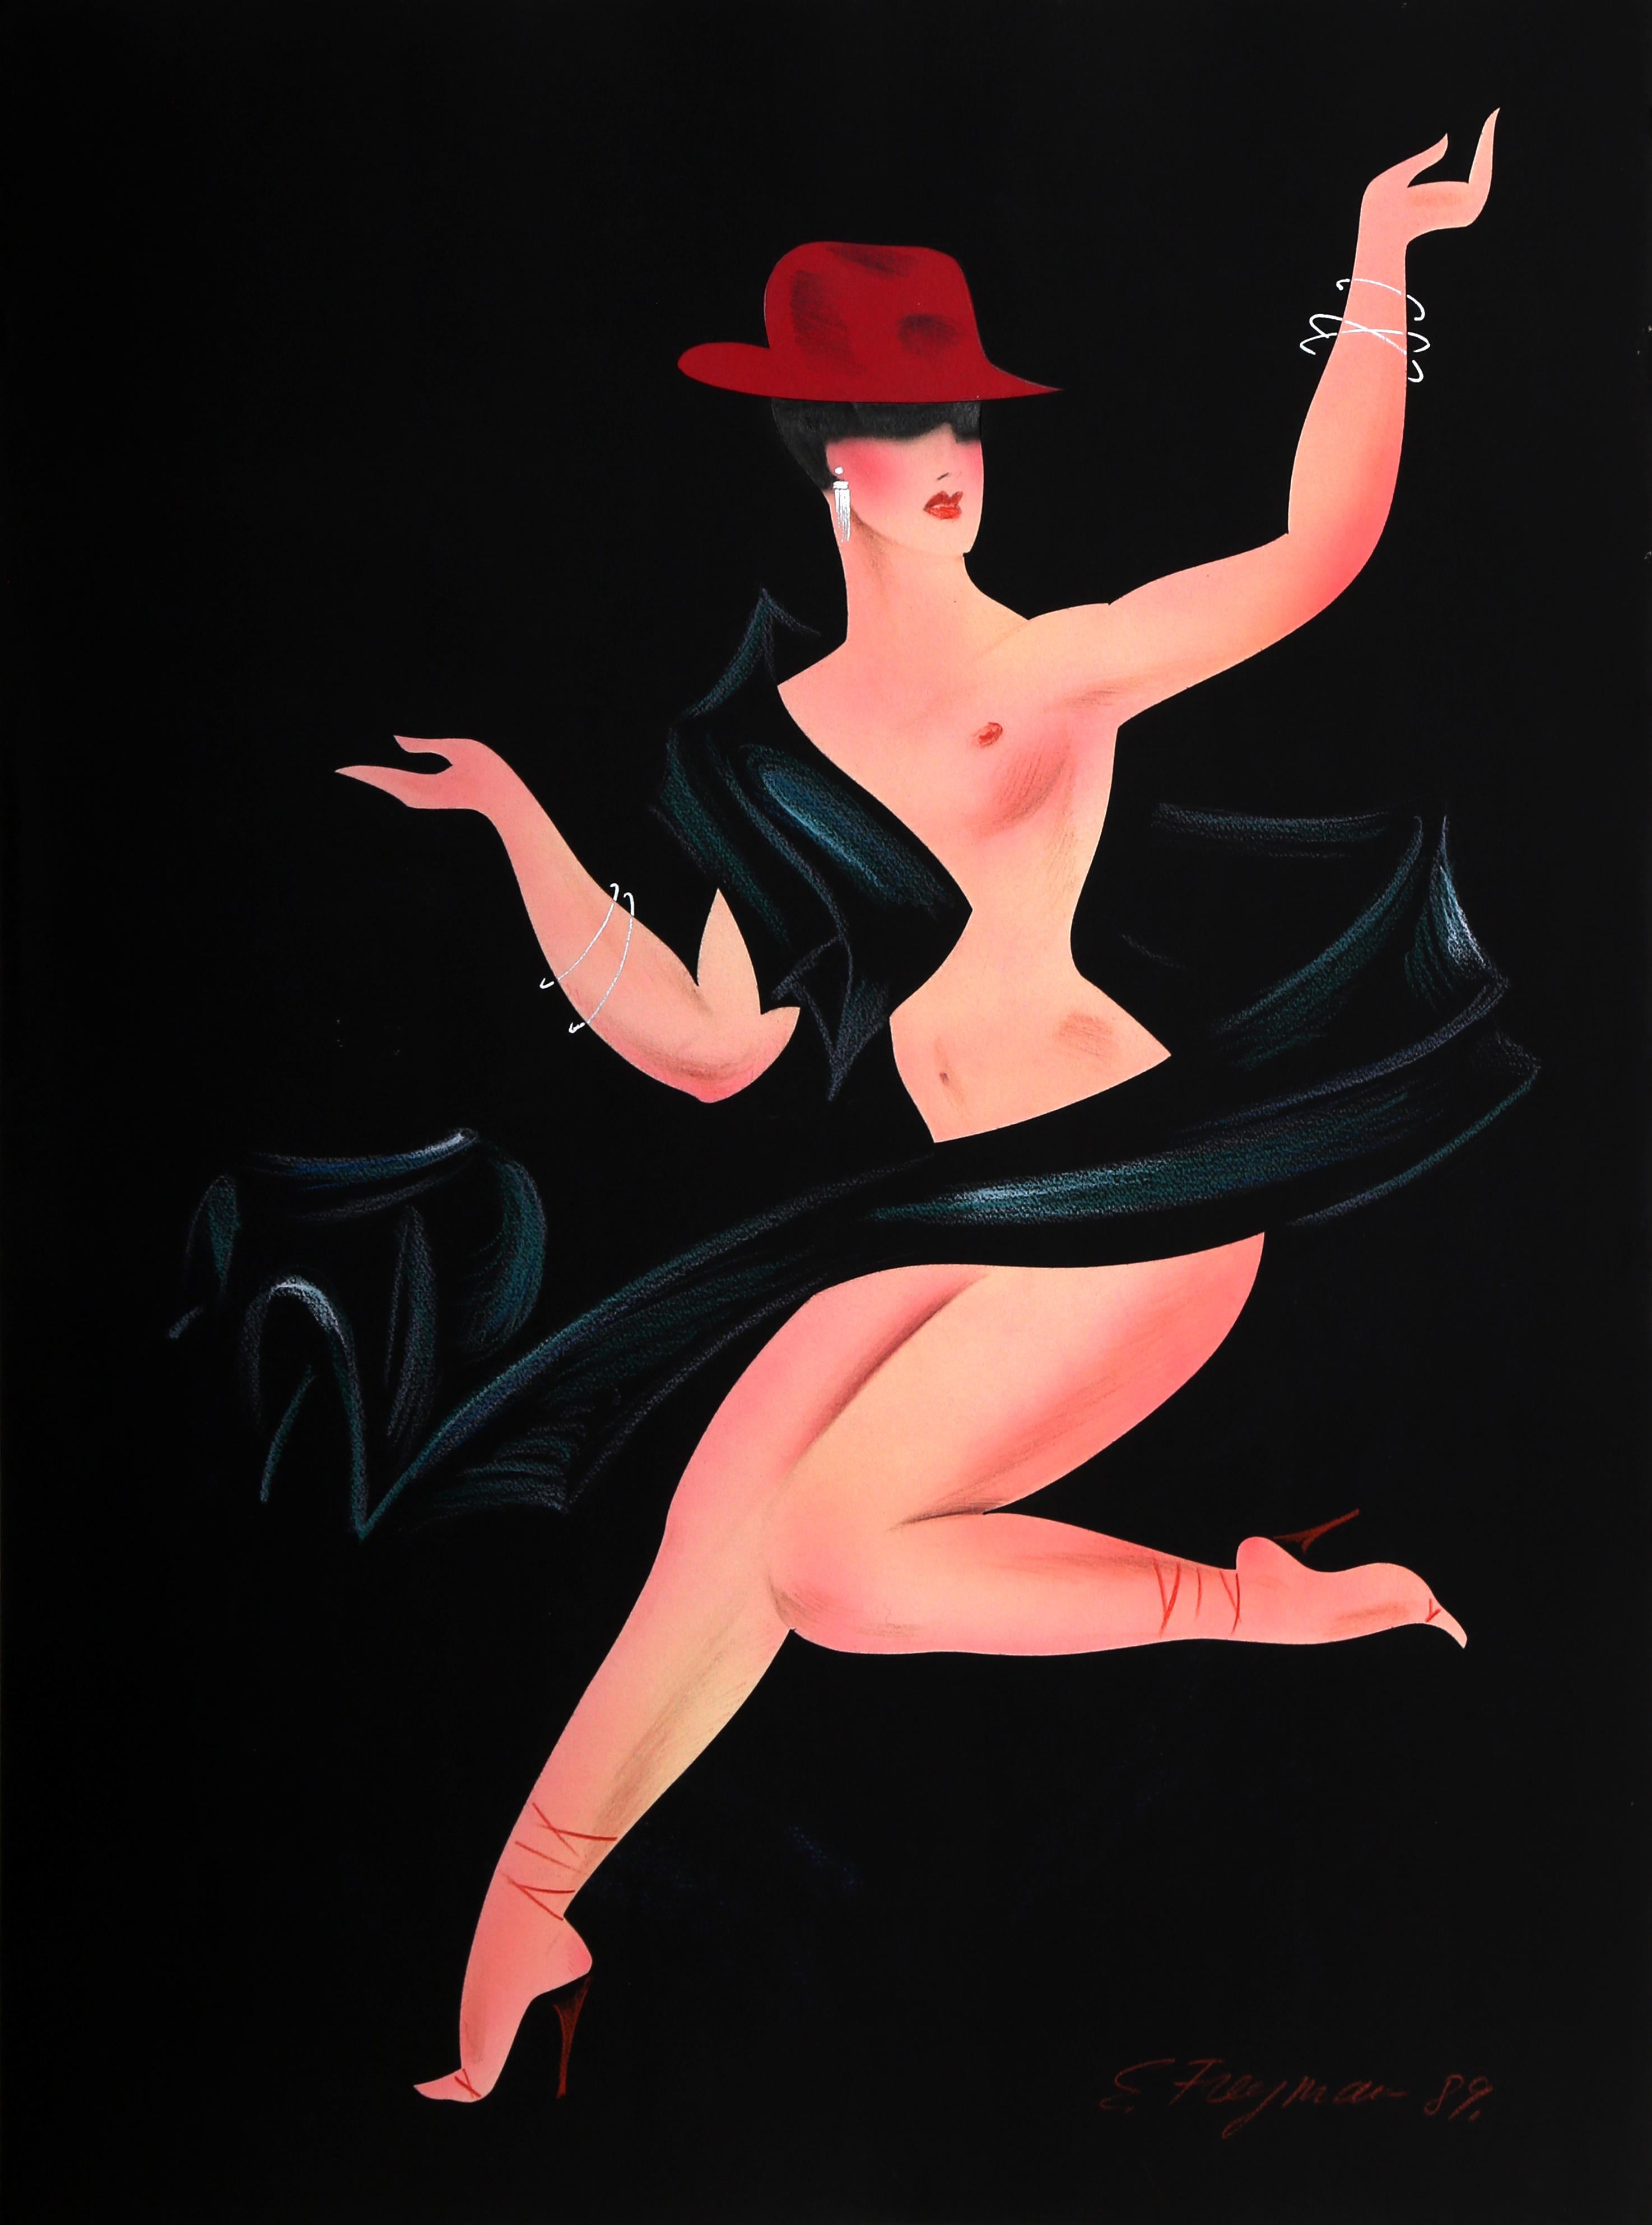 Une œuvre sur papier de style Art déco des années 80 représentant une femme nue dansant, réalisée par l'artiste contemporain Erik Freyman.
Collage avec pastels sur papier, signé en bas à droite.